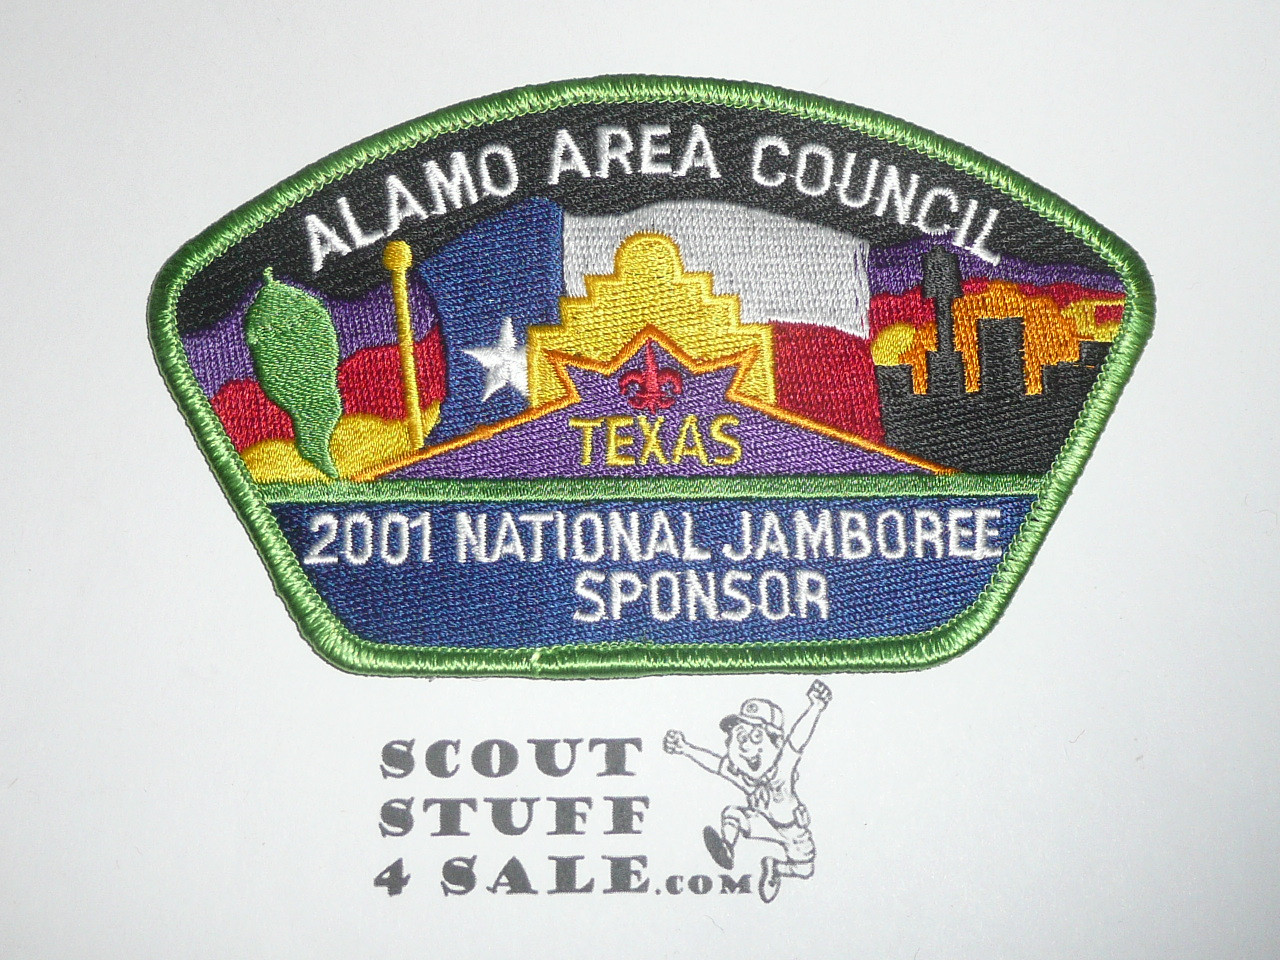 2001 National Jamboree JSP - Alamo Area Council, sponsor